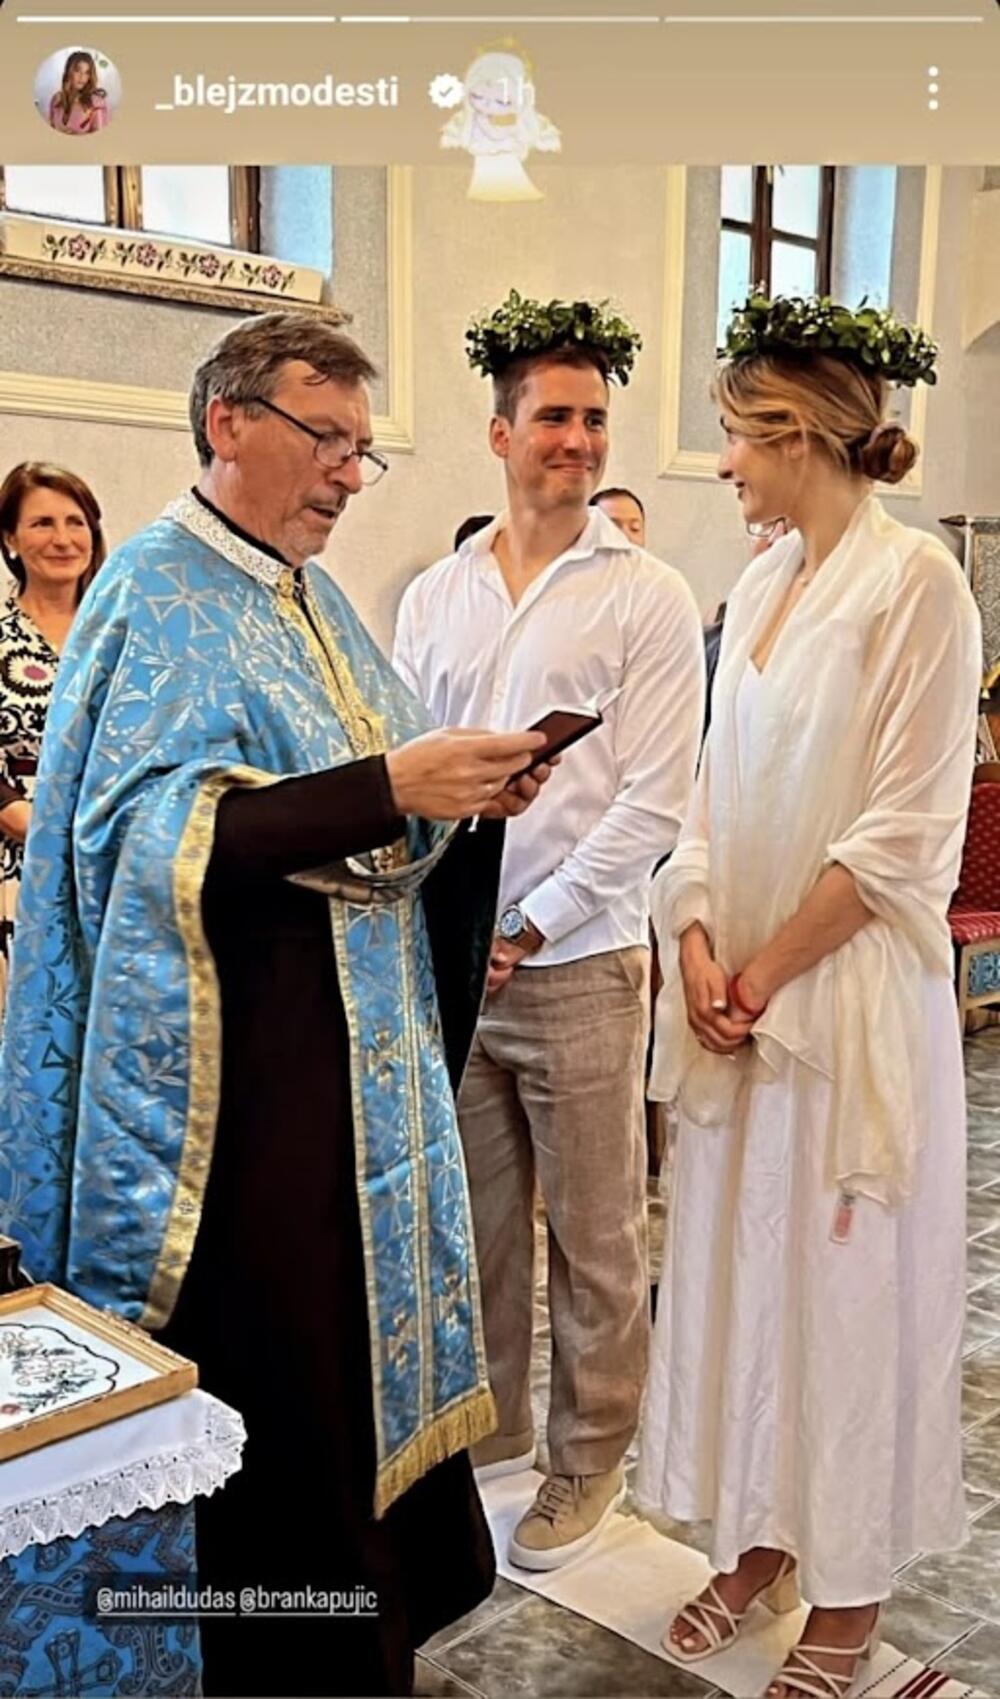 Na crkvenom venčanju Anđela je imala belu dugu haljinu, dok je njen izabranik imao lanenu košulju i odelo